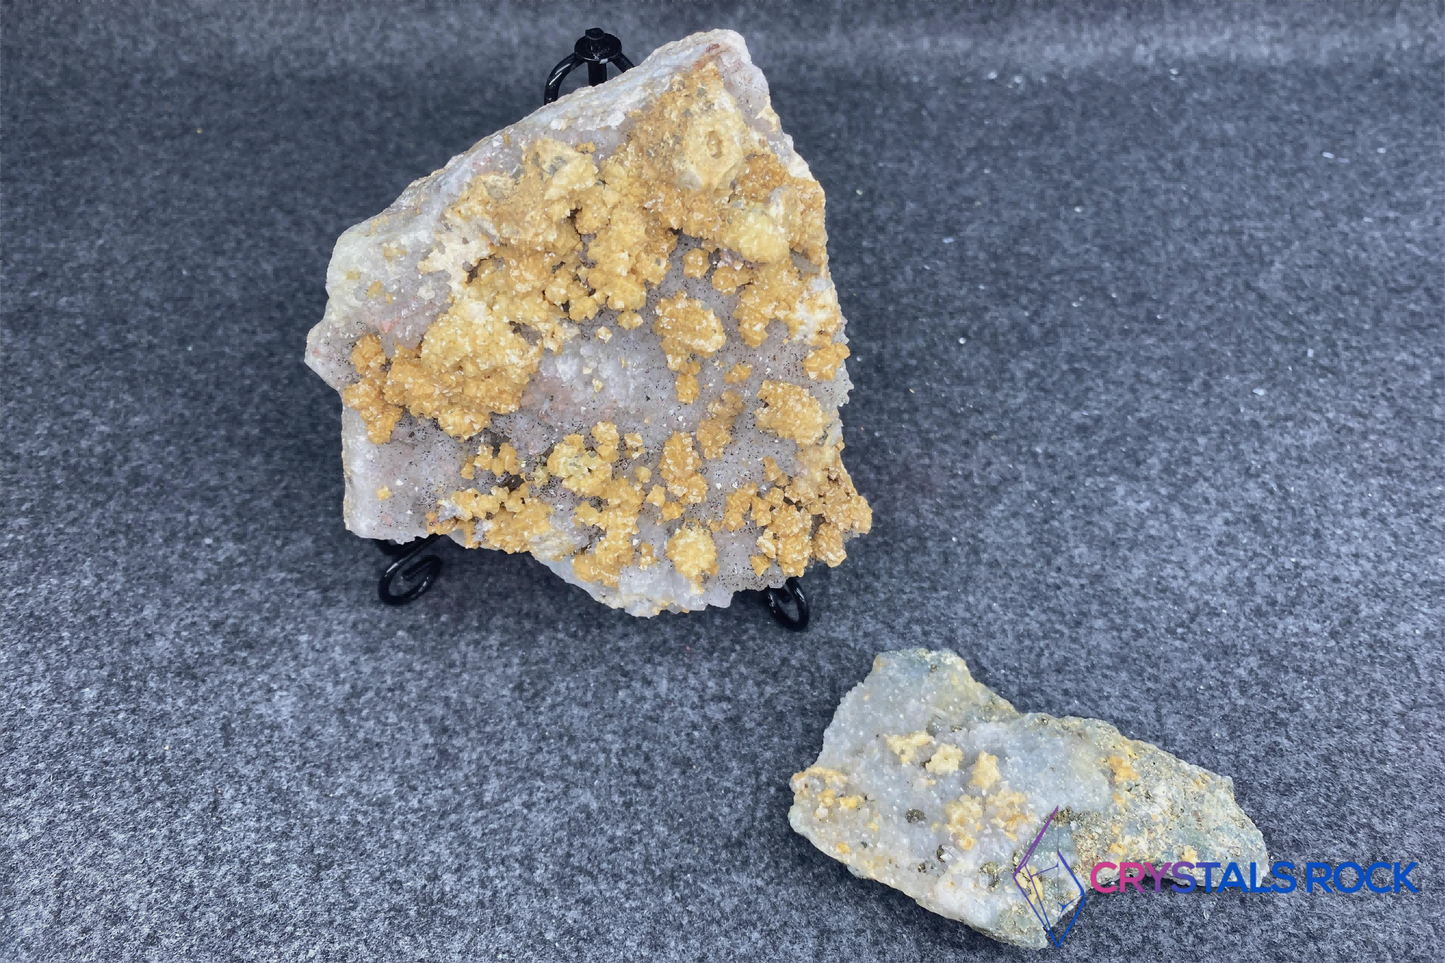 Red hematitie/pyrite/quartz/calcite